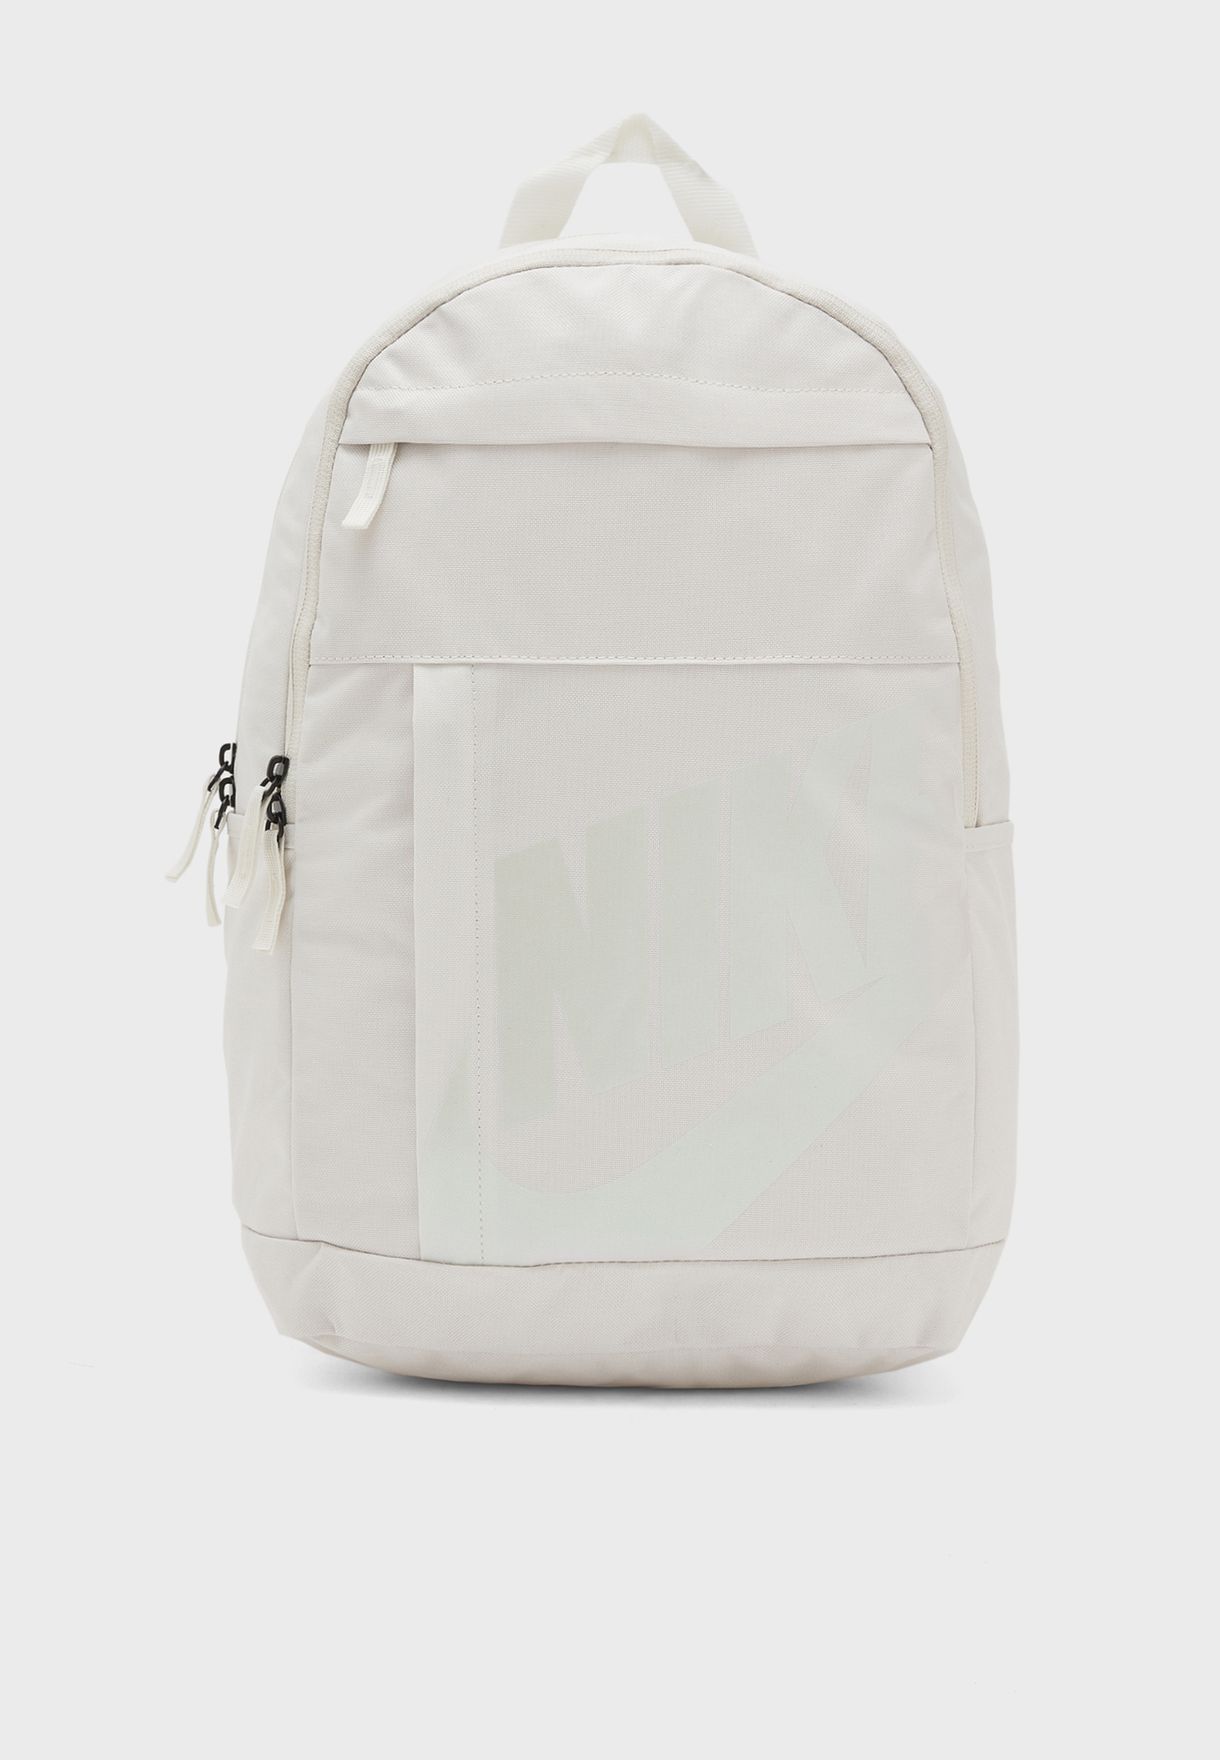 nike backpack white